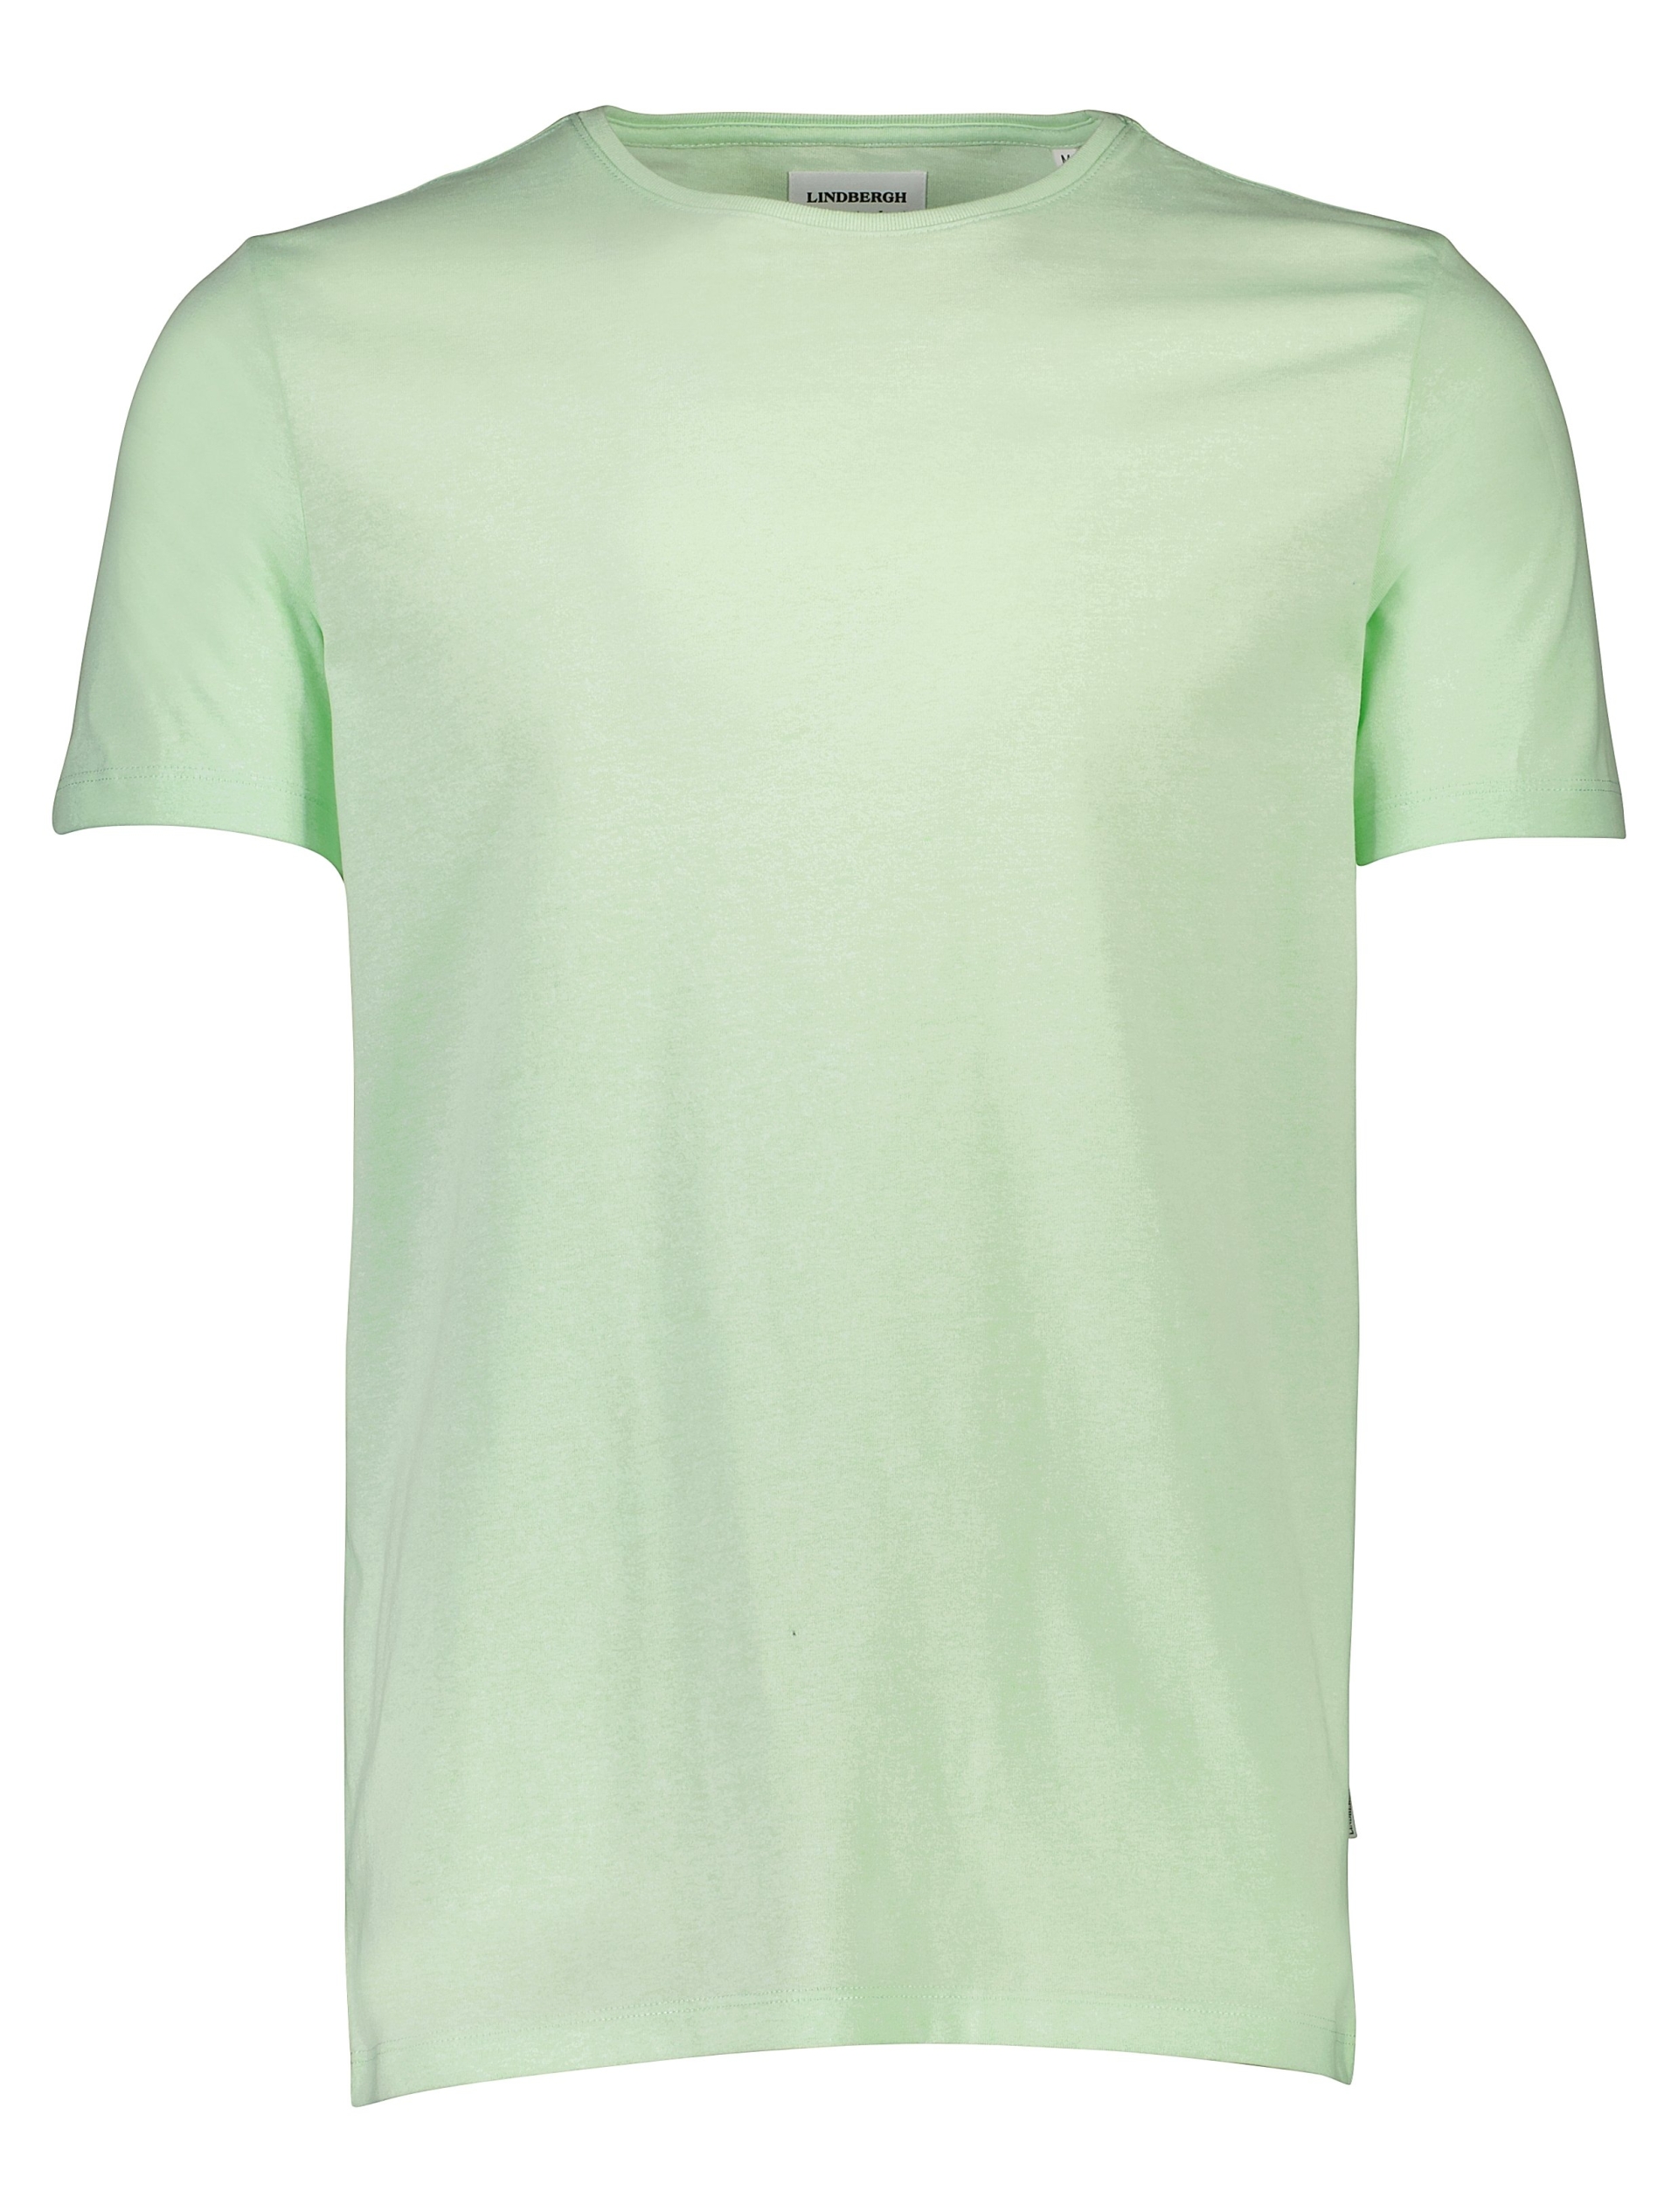 Lindbergh T-shirt groen / mint mix 224